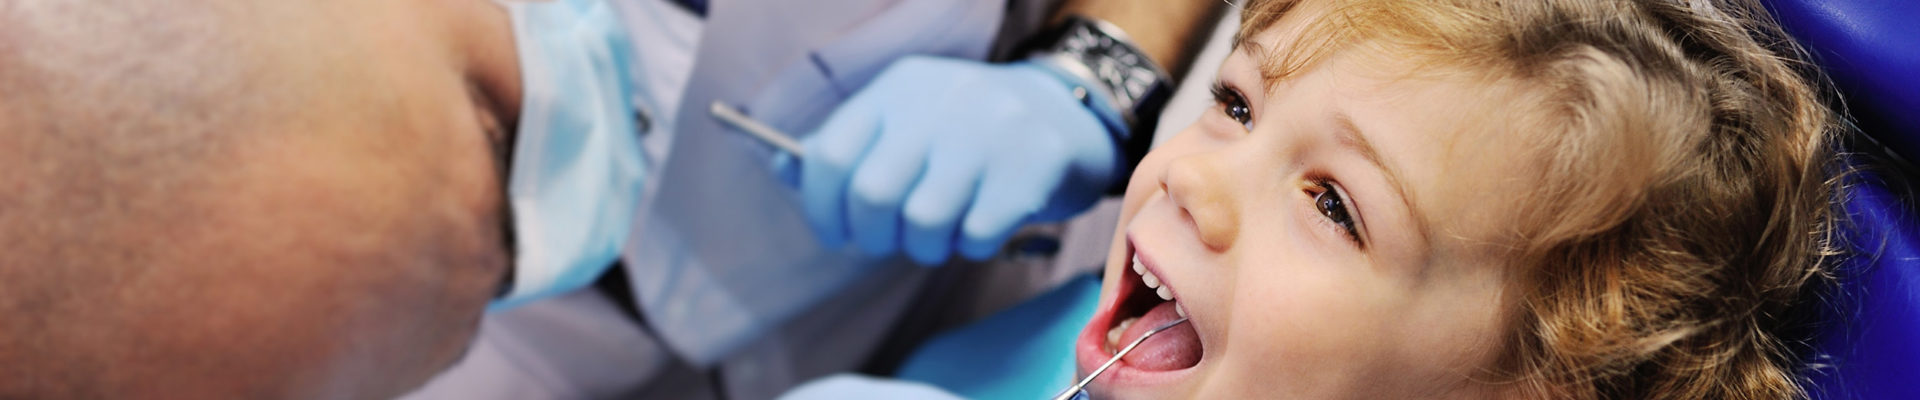 Un enfant chez le dentiste - 100% santé dentaire